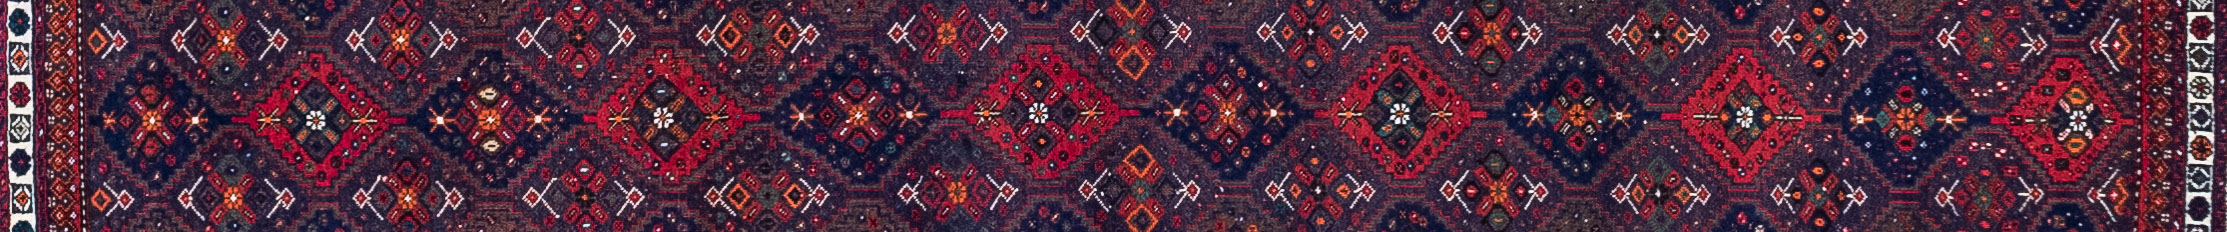 Shiraz Persian Carpet Rug N1Carpet Canada Montreal Tapis Persan 1290